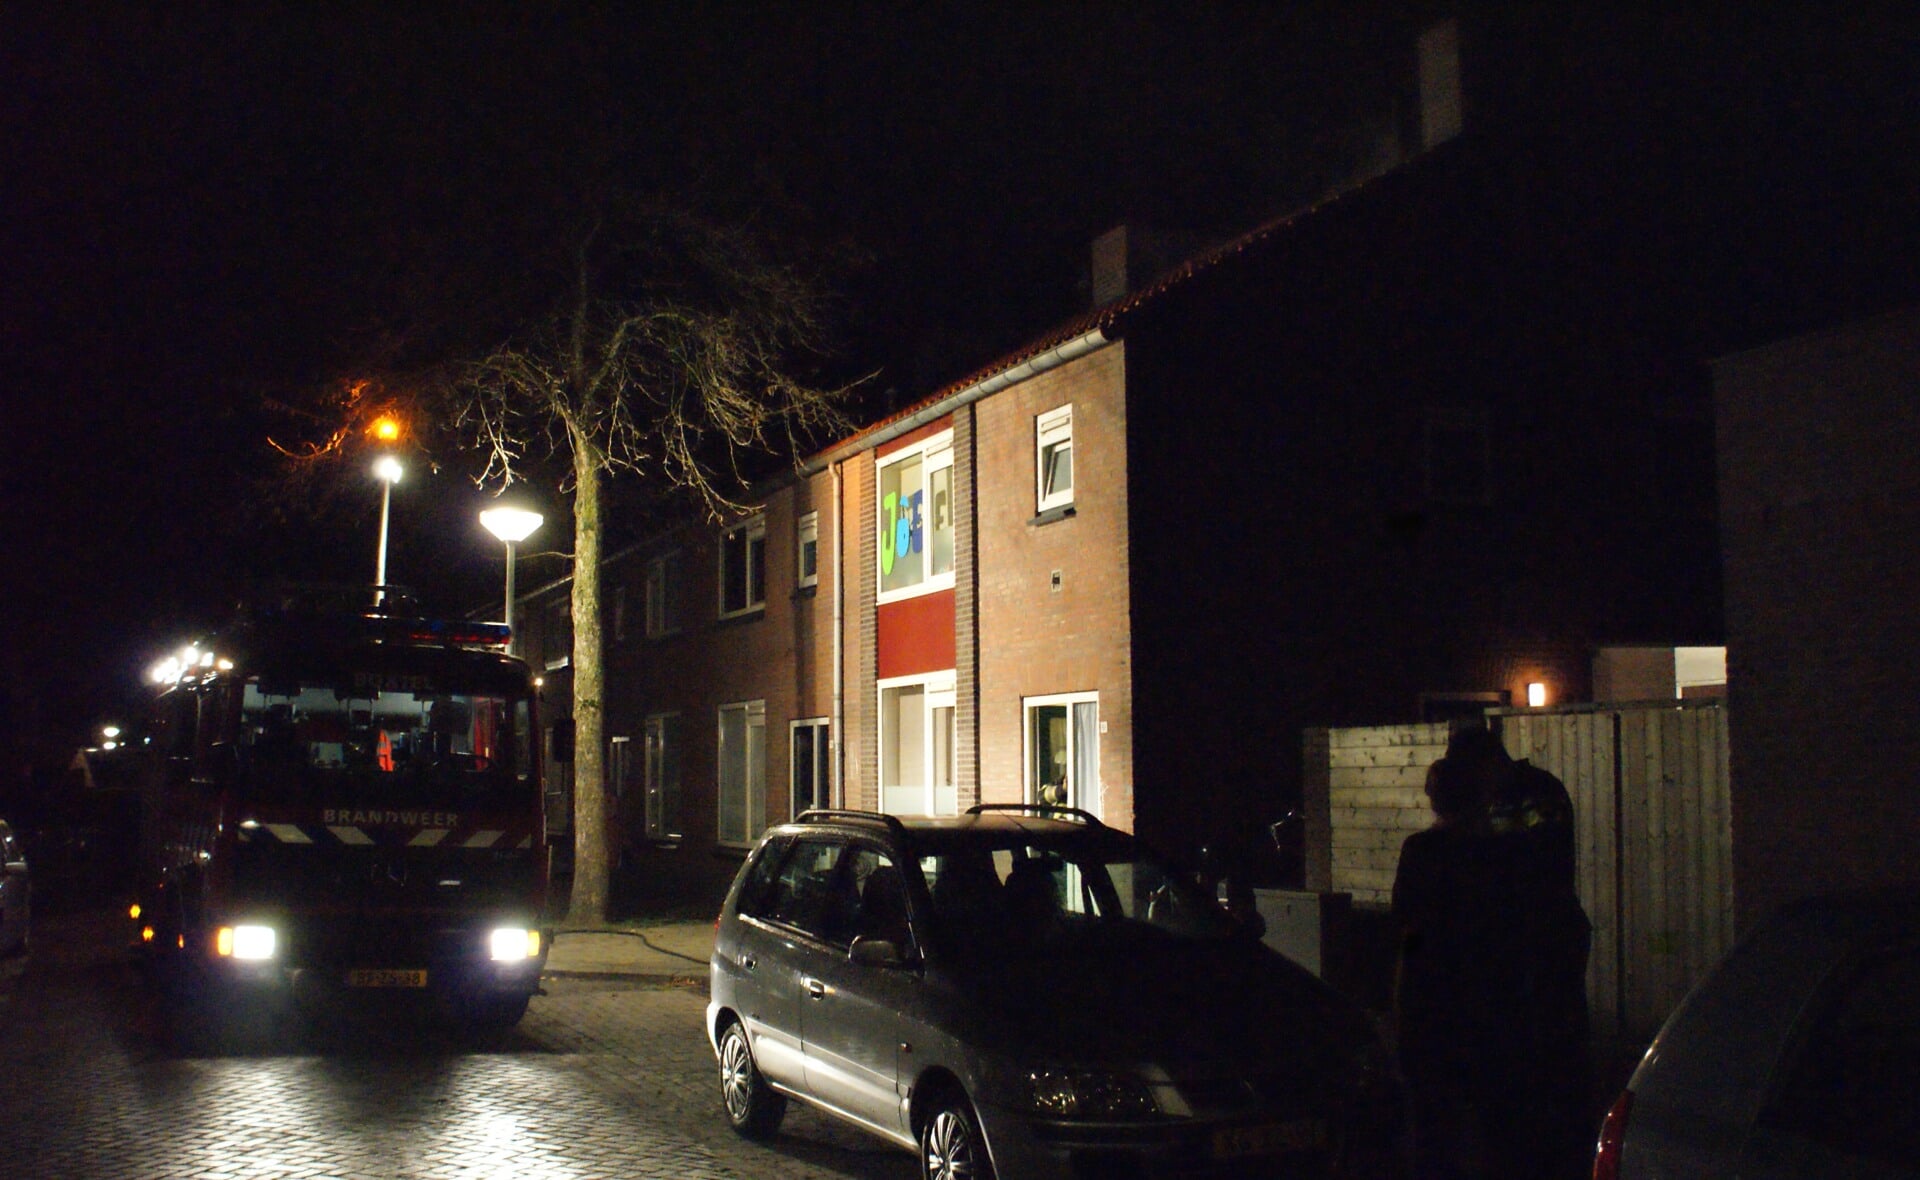 In de woning aan de Sint-Willibrordstraat in Boxtel werd tijdens een brand een hennepkwekerij ontdekt. Het huis is door burgemeester Buijs drie maanden verzegeld.